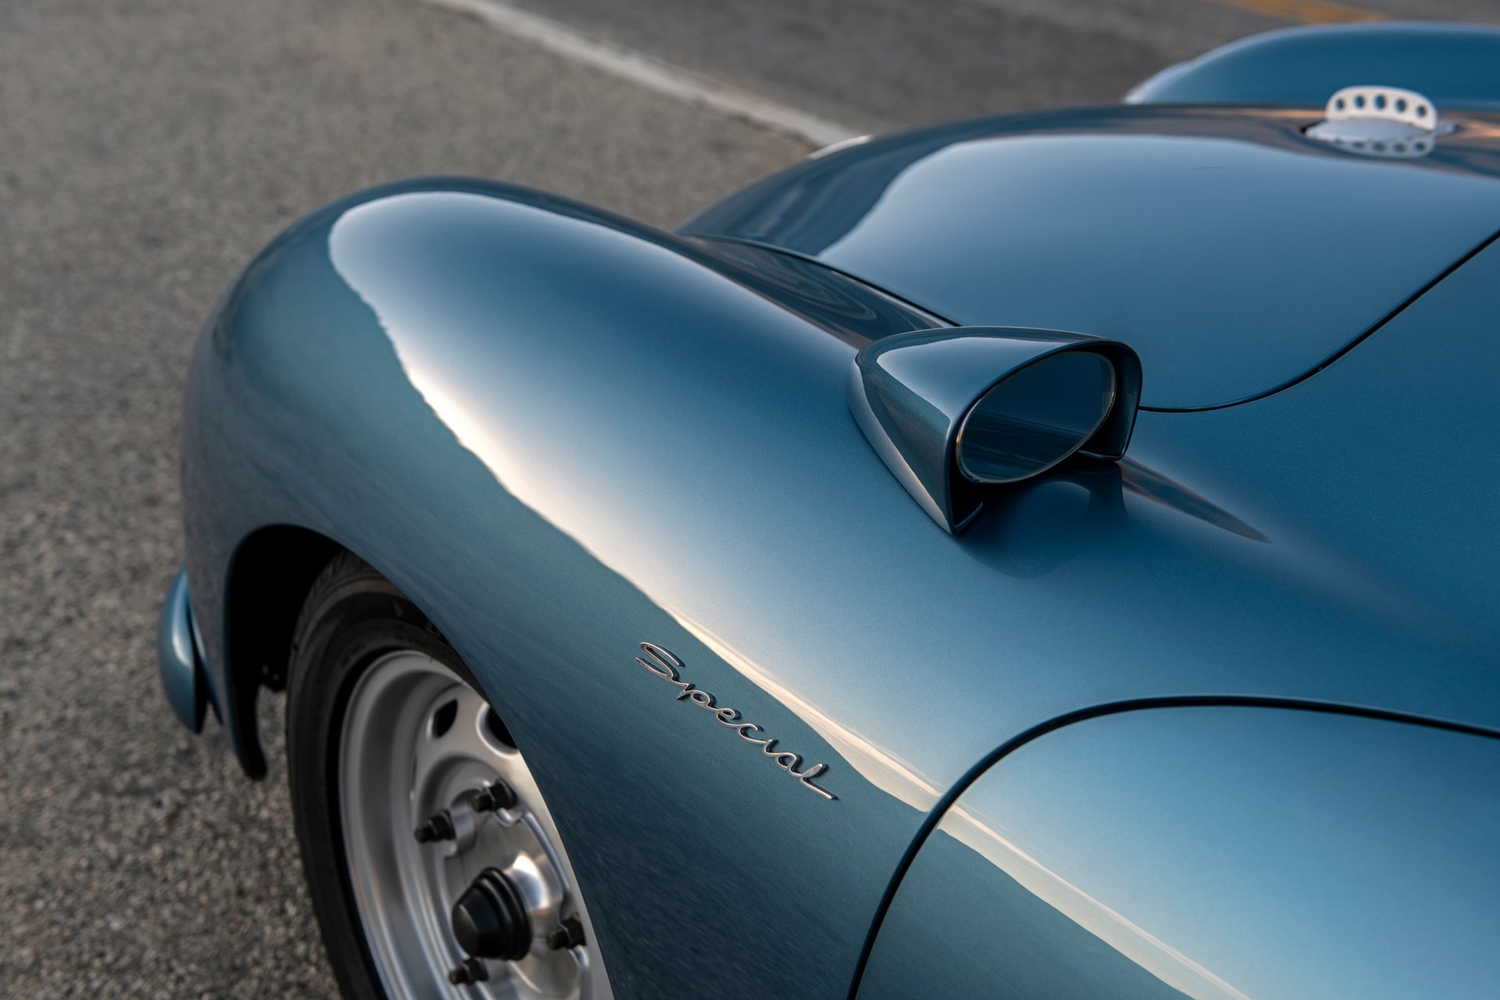 Korhű tuningnak néz ki, de ennél több van a kék 356-os Porsche mögött 8